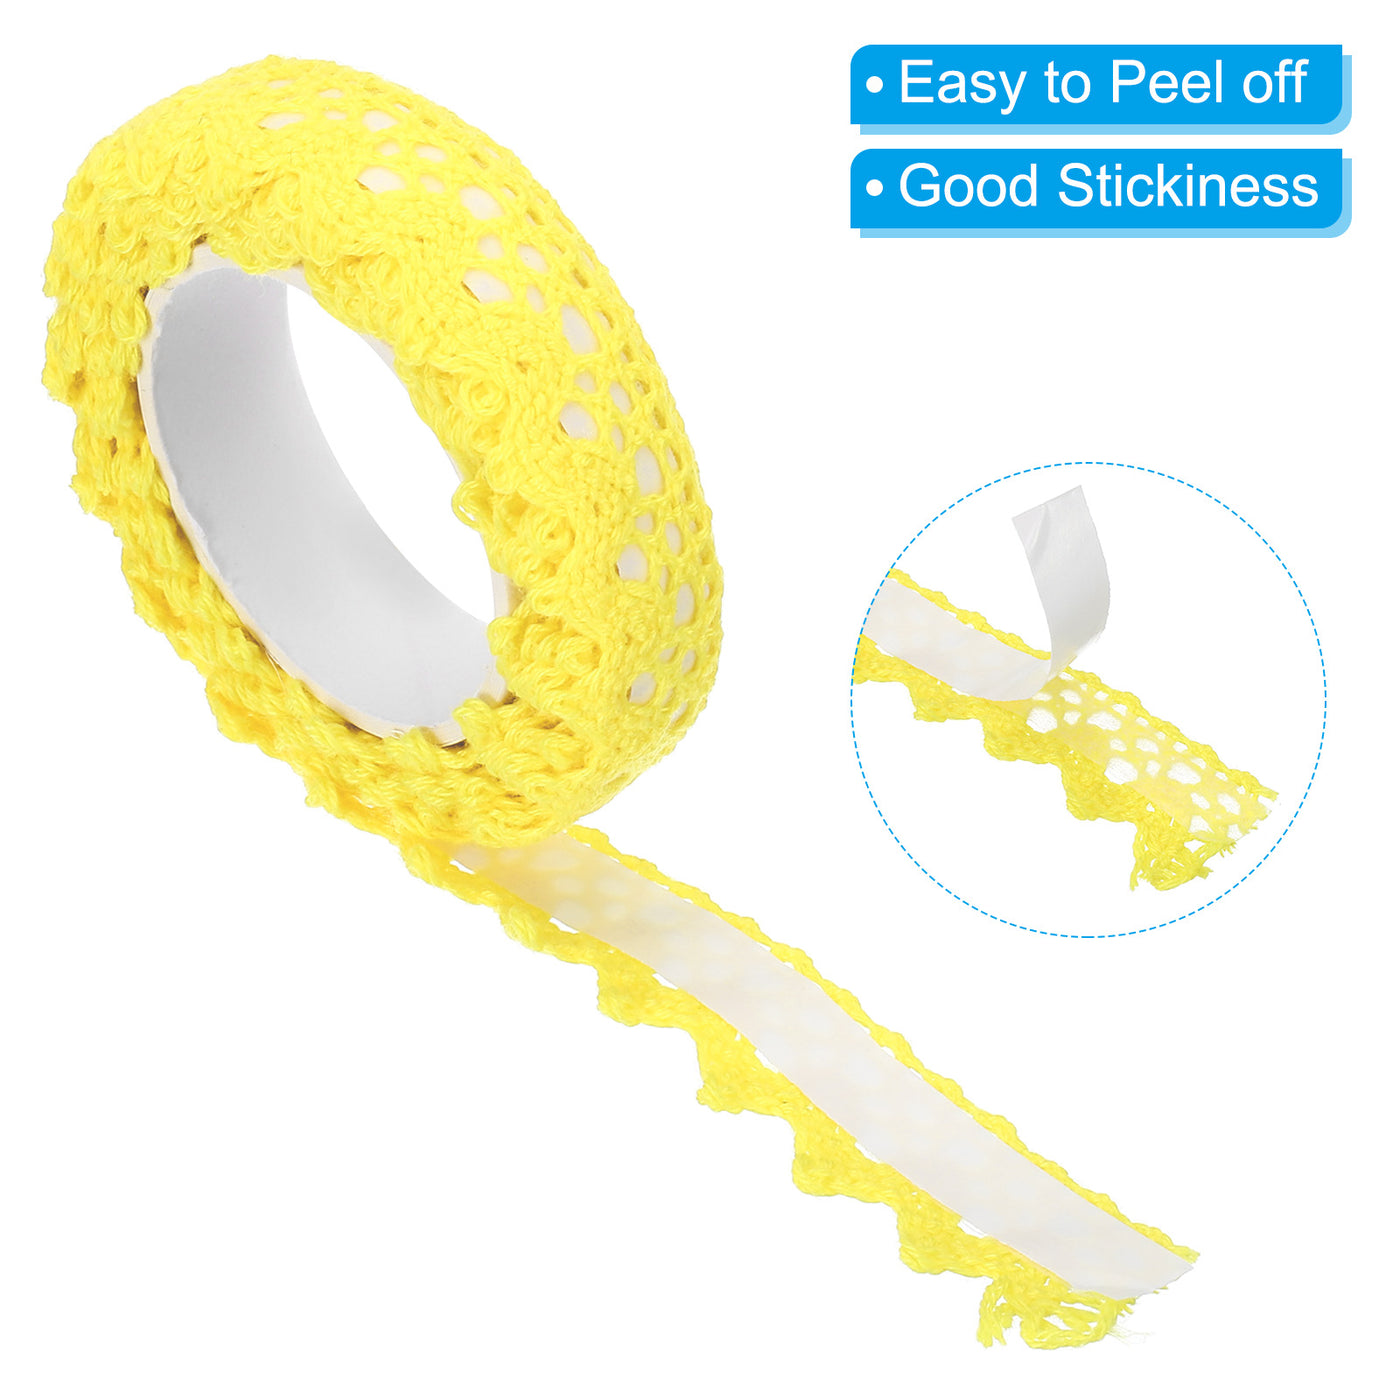 Harfington Lace Ribbon Self-Adhesive Lace Tape, 4 Rolls Cotton Masking Sticker Yellow